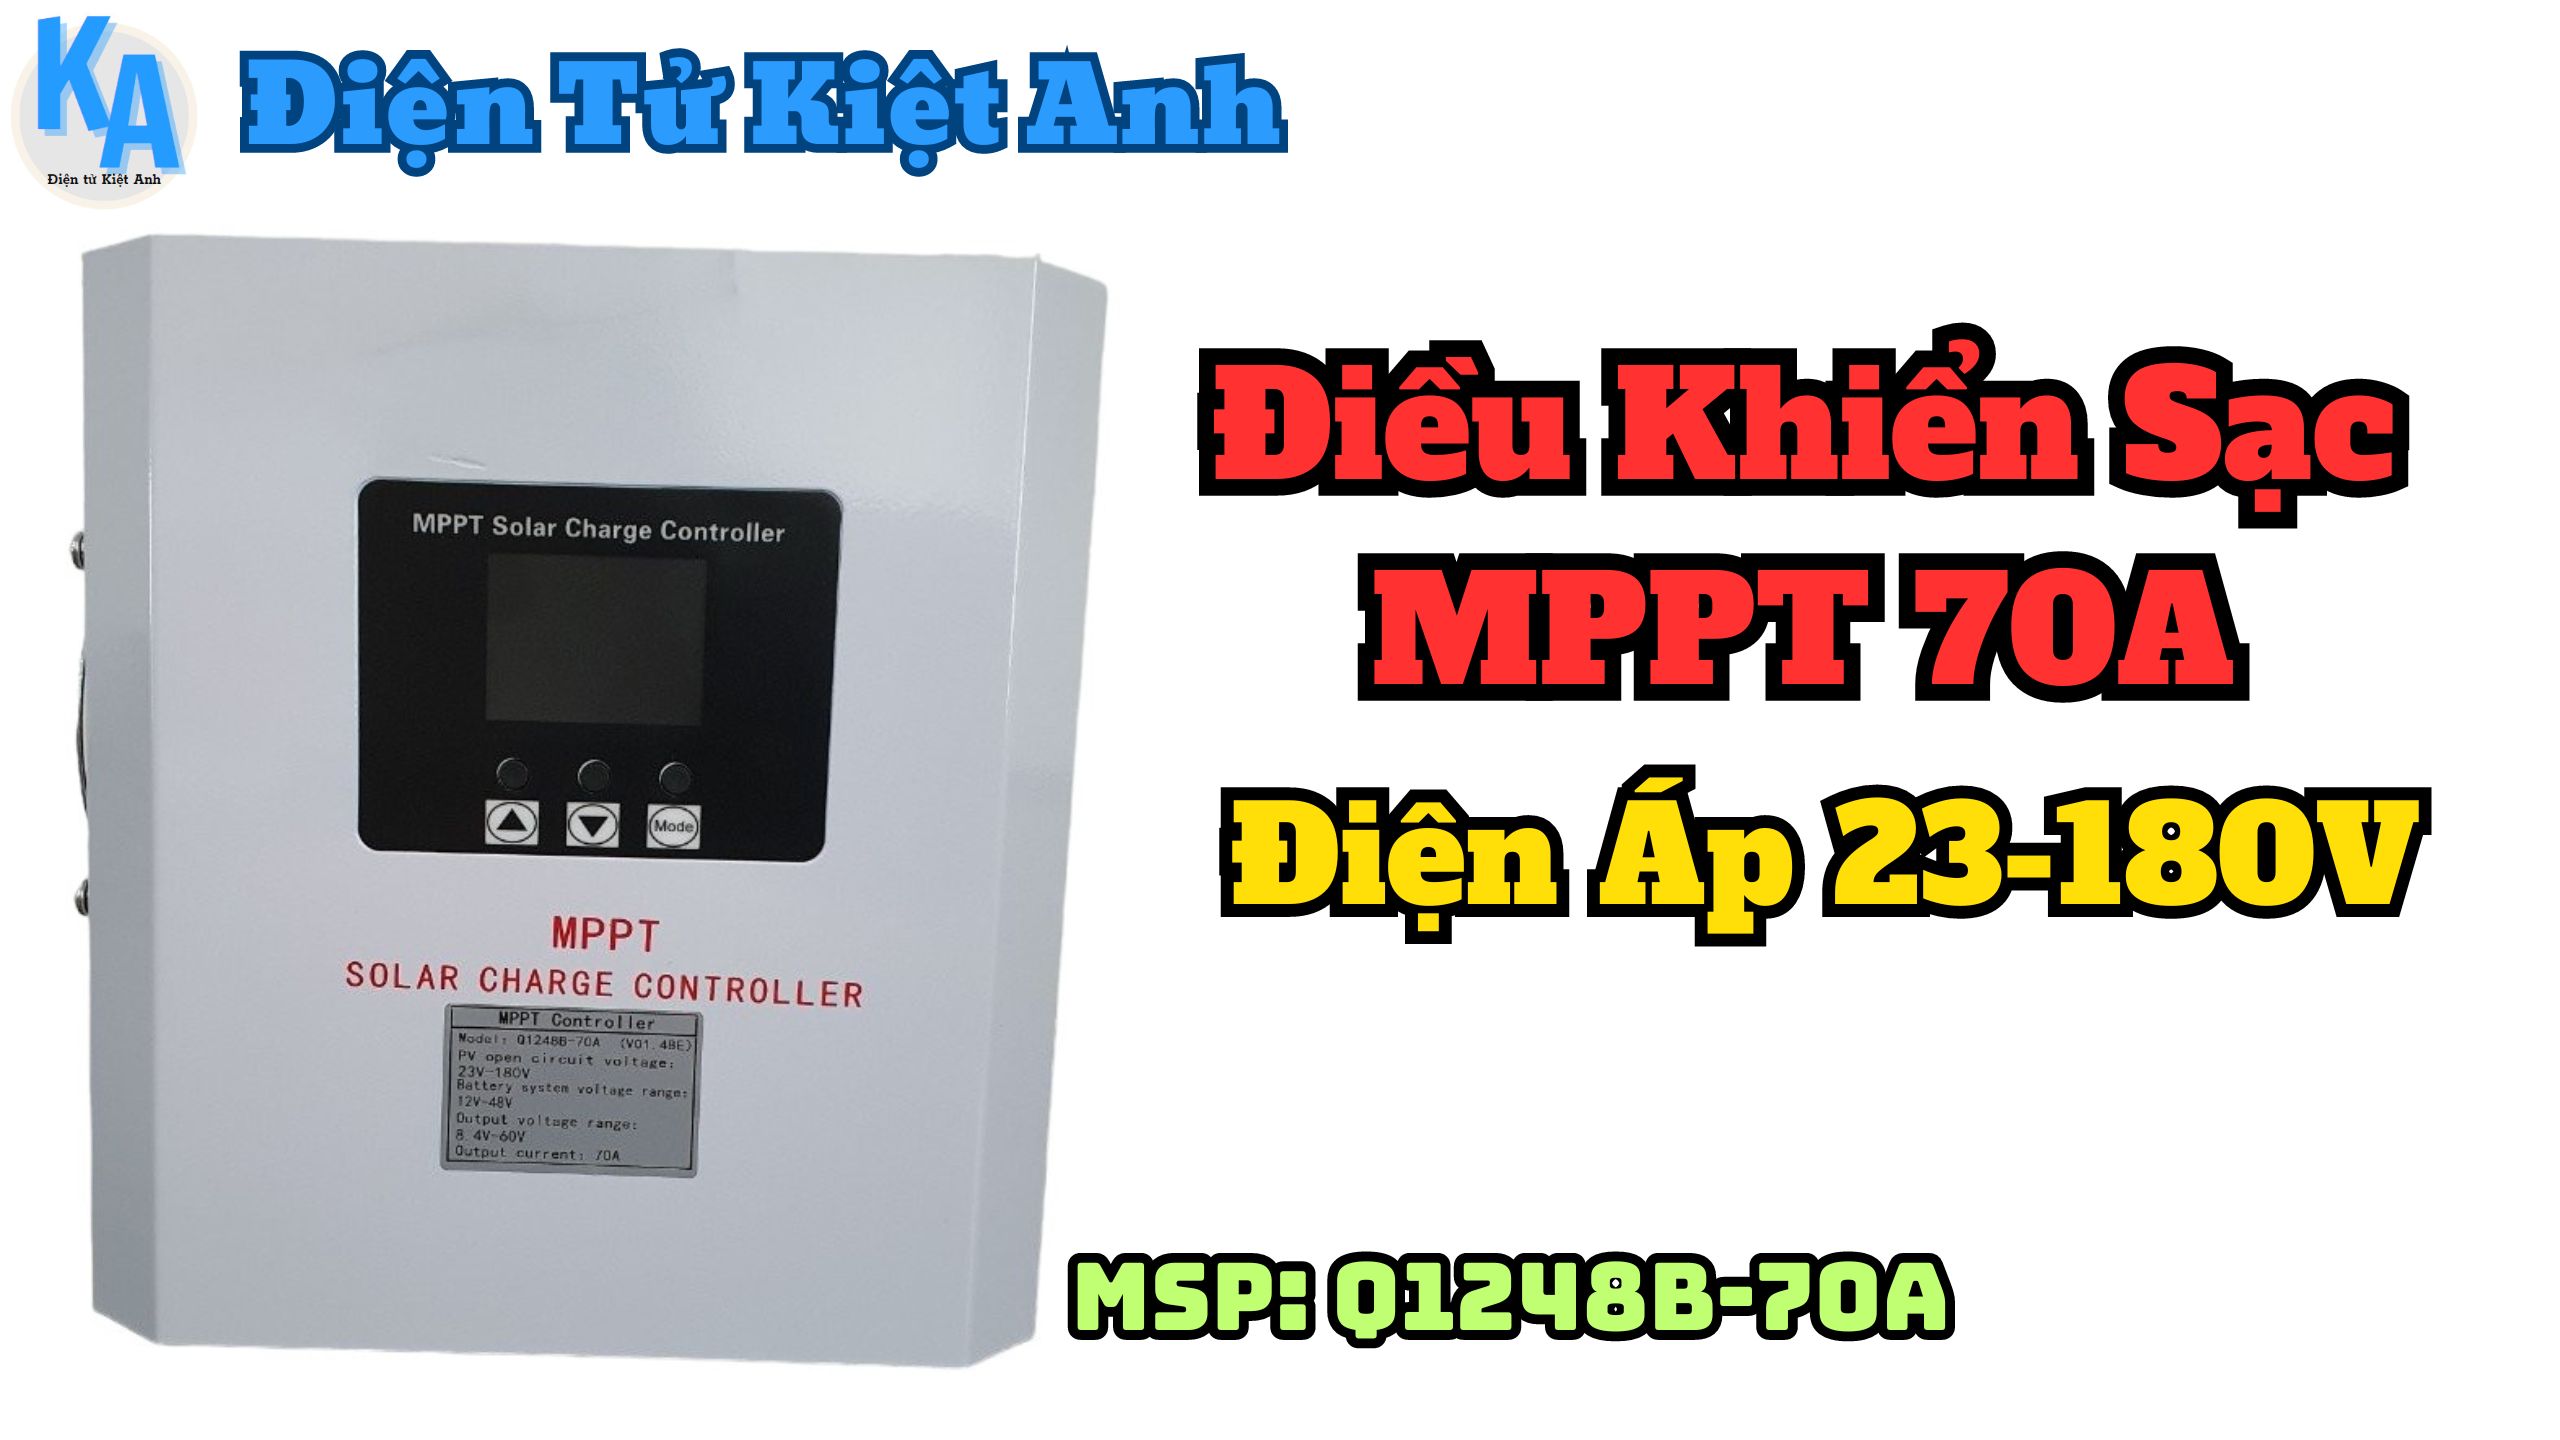 Điều khiển sạc MPPT 70A Q1248B-70A